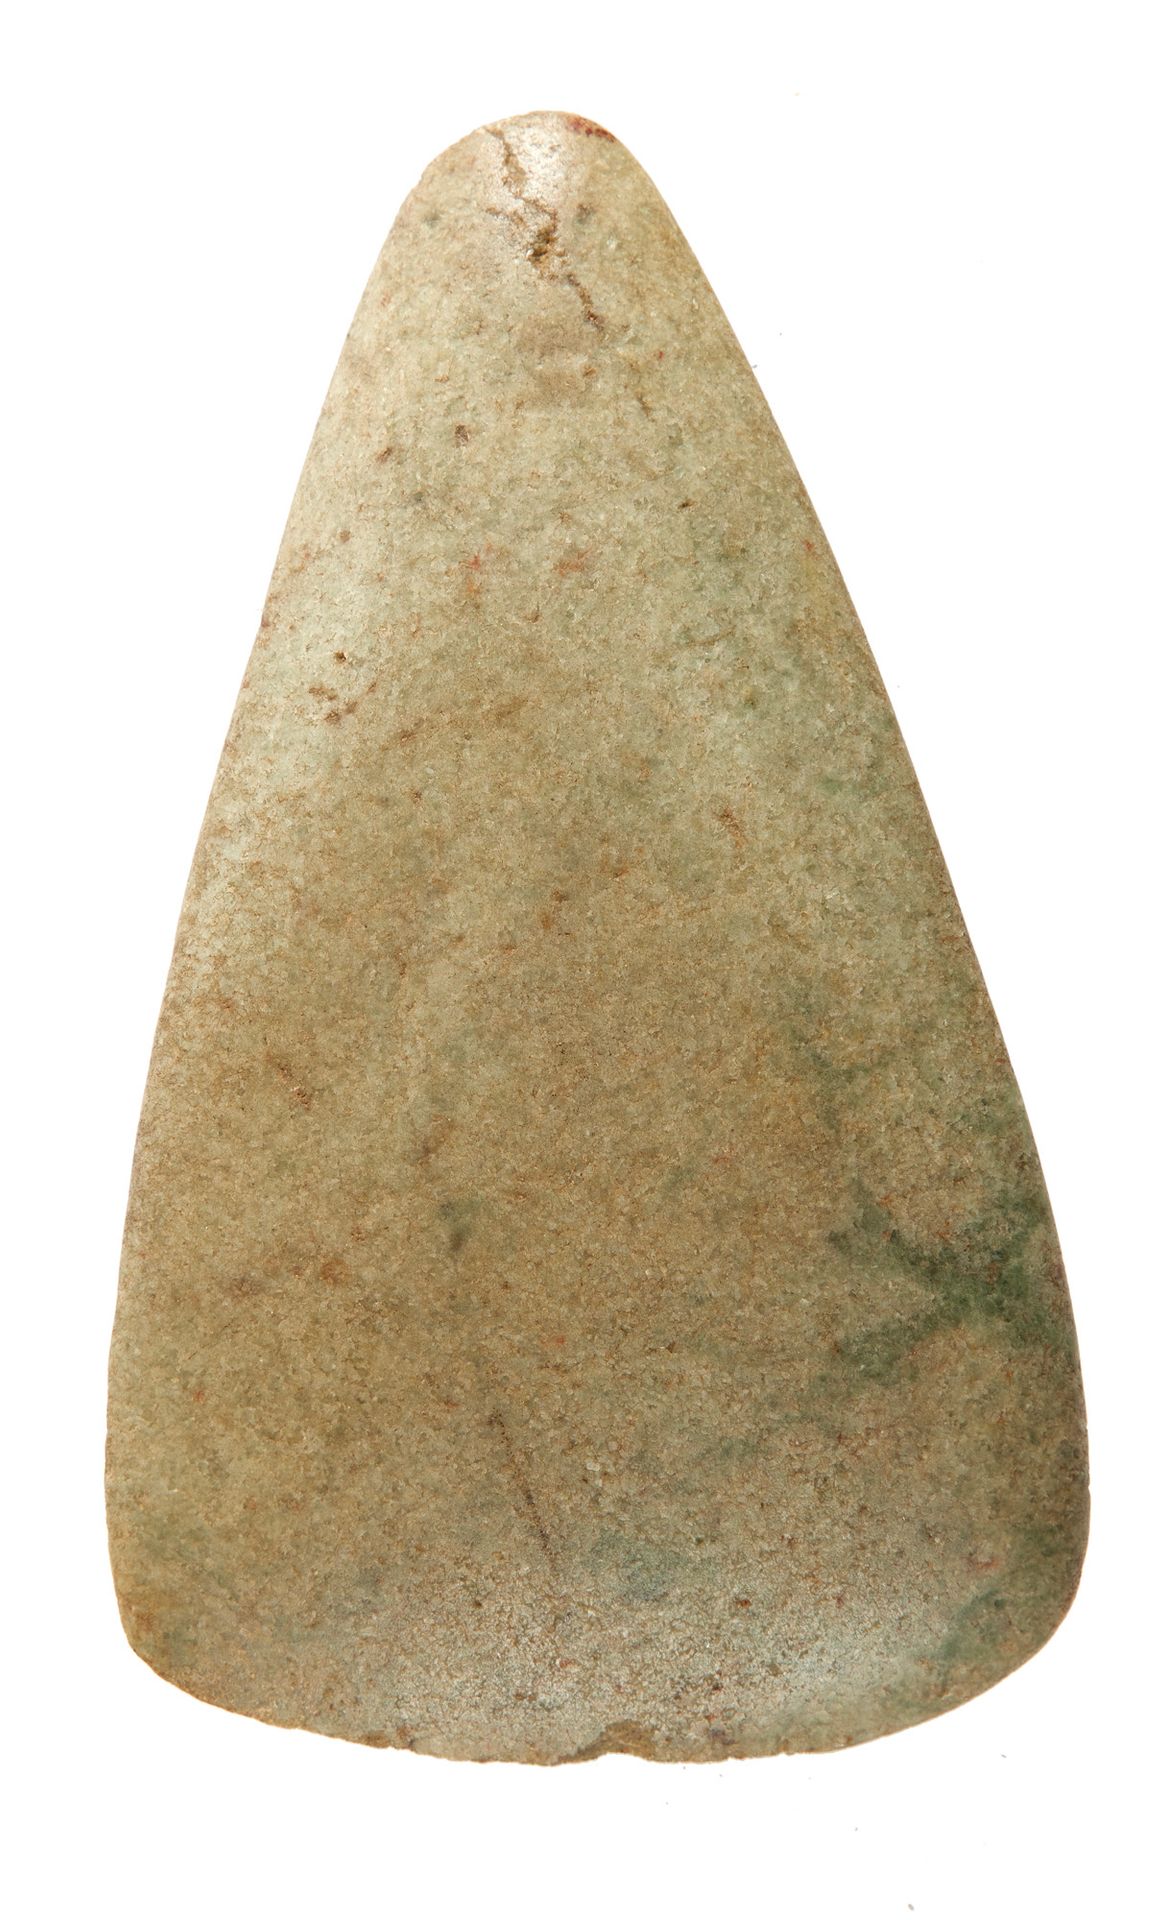 Herminette triangulaire polie. Polierte dreieckige Schaufel.

Grüner Jadeit, kle&hellip;